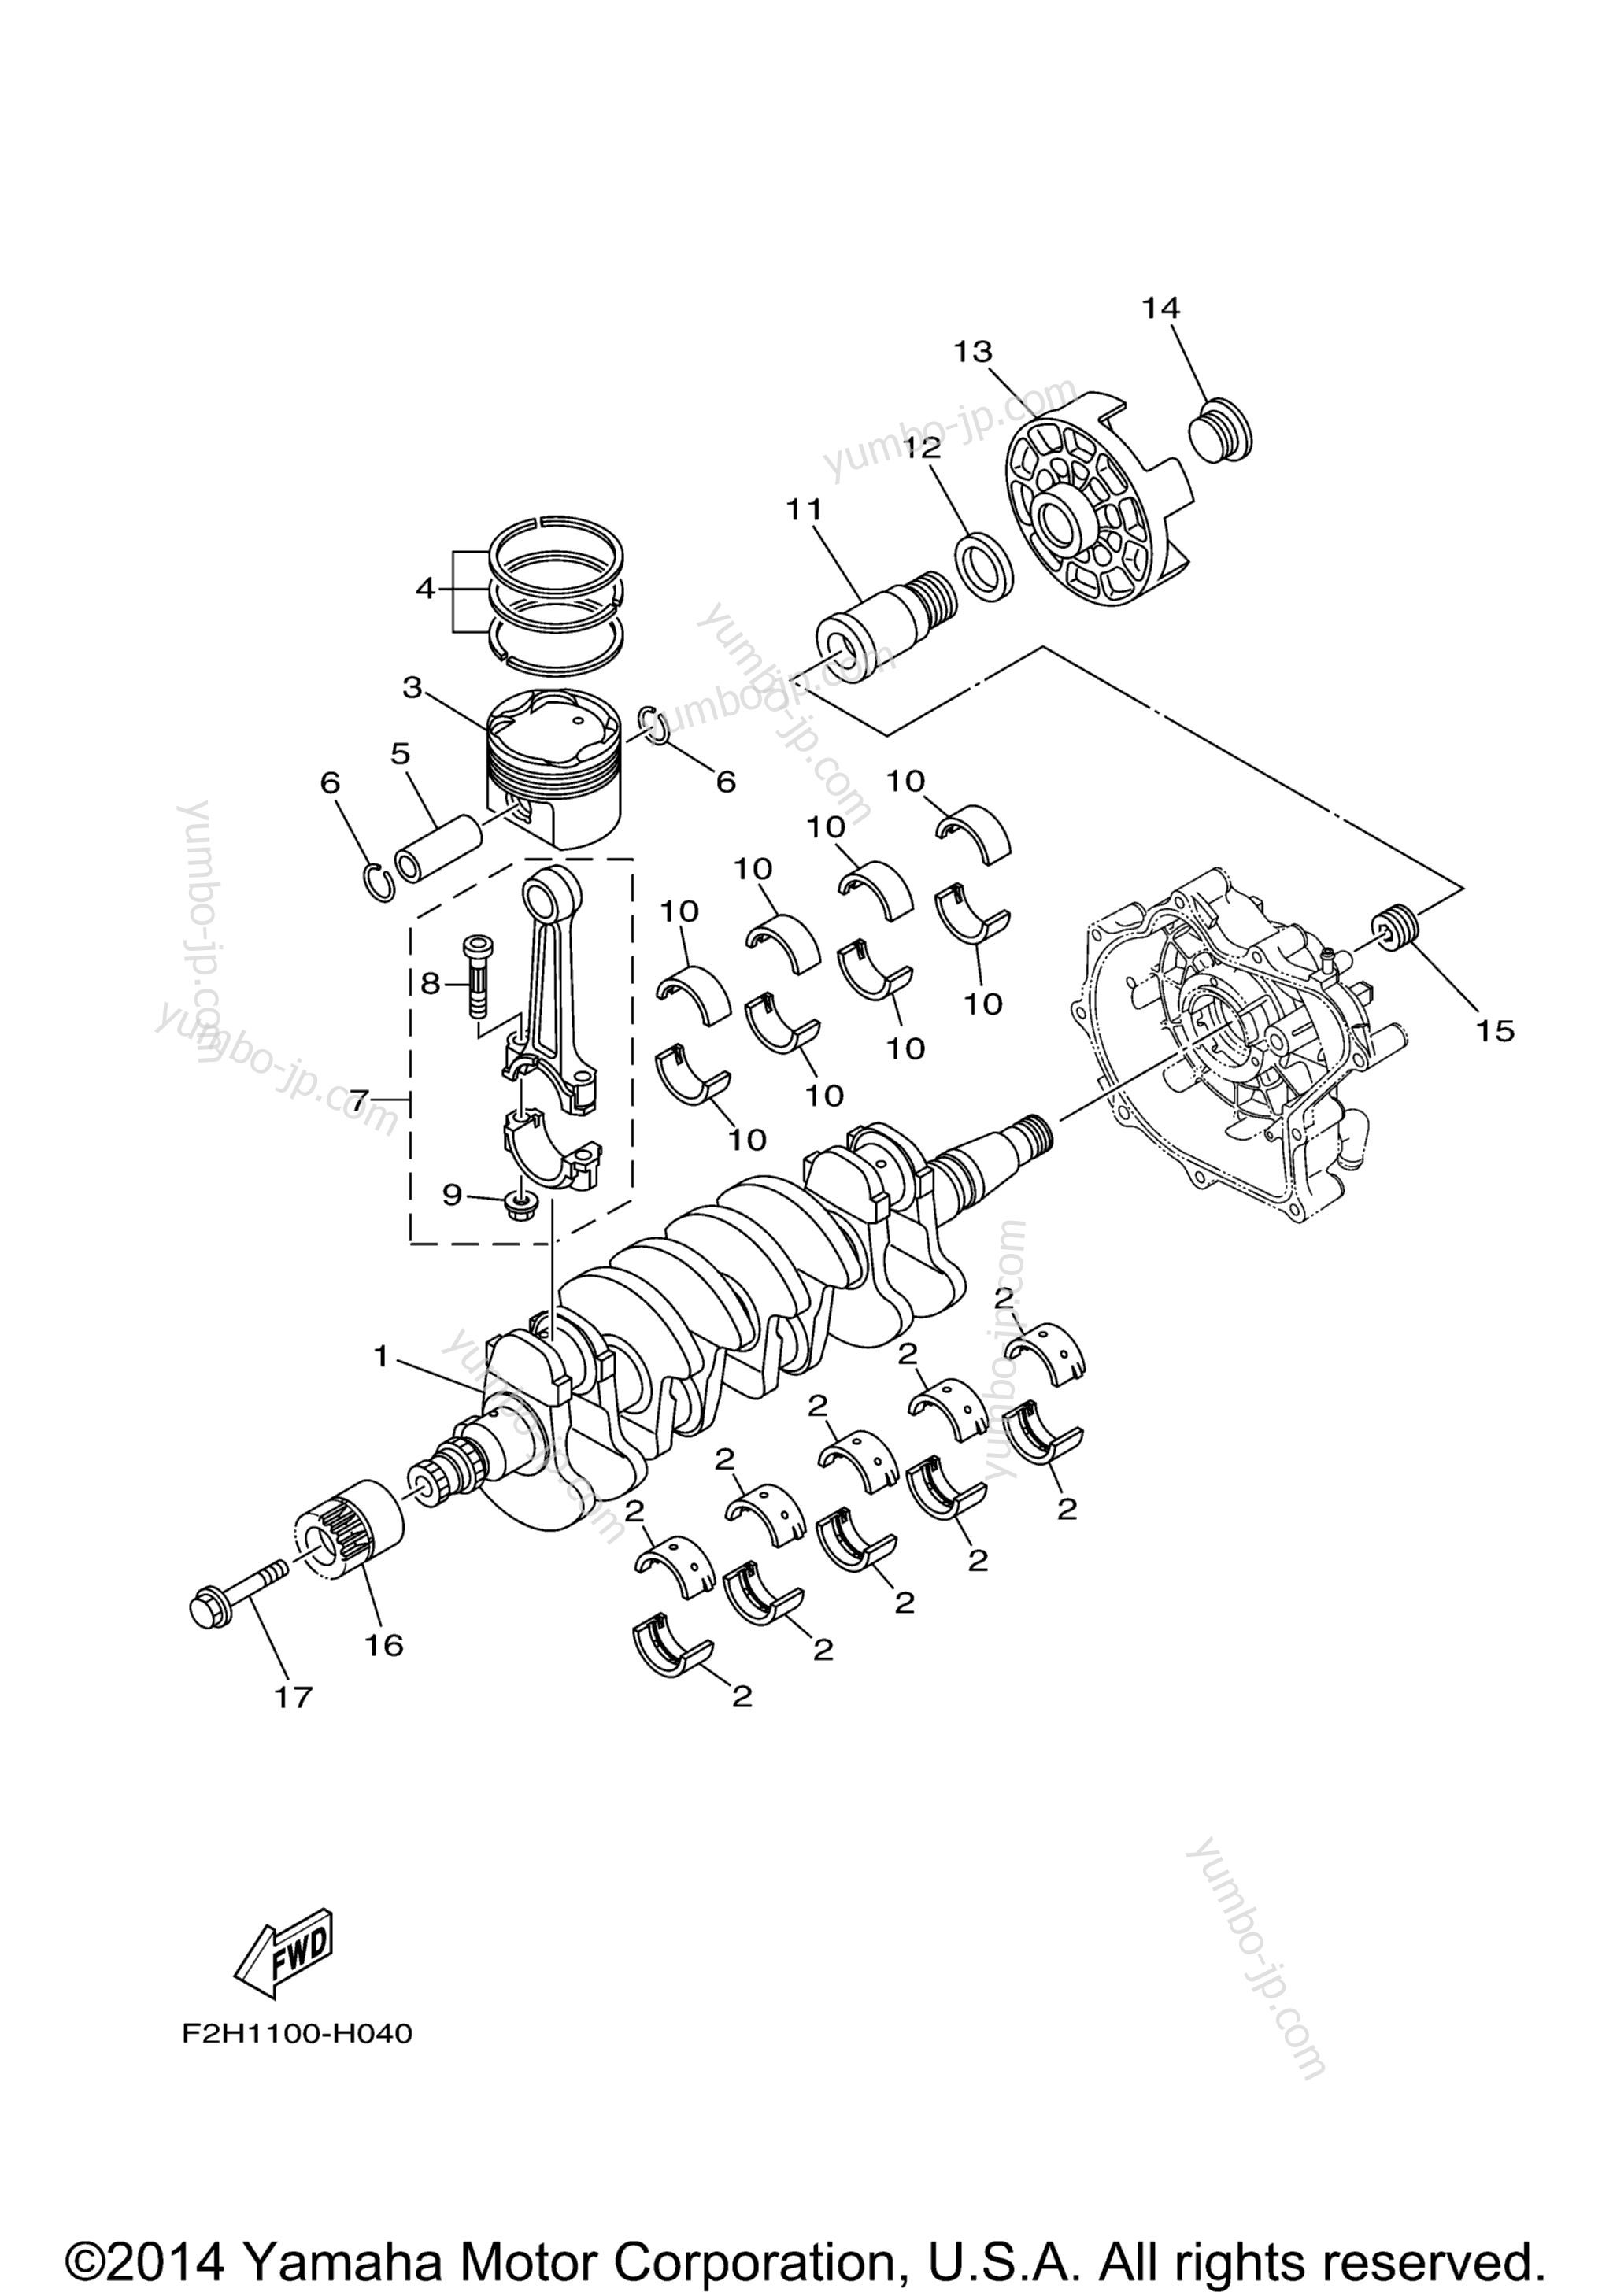 Crankshaft & Piston для катеров YAMAHA SX190 (RX1800DMC) 2013 г.